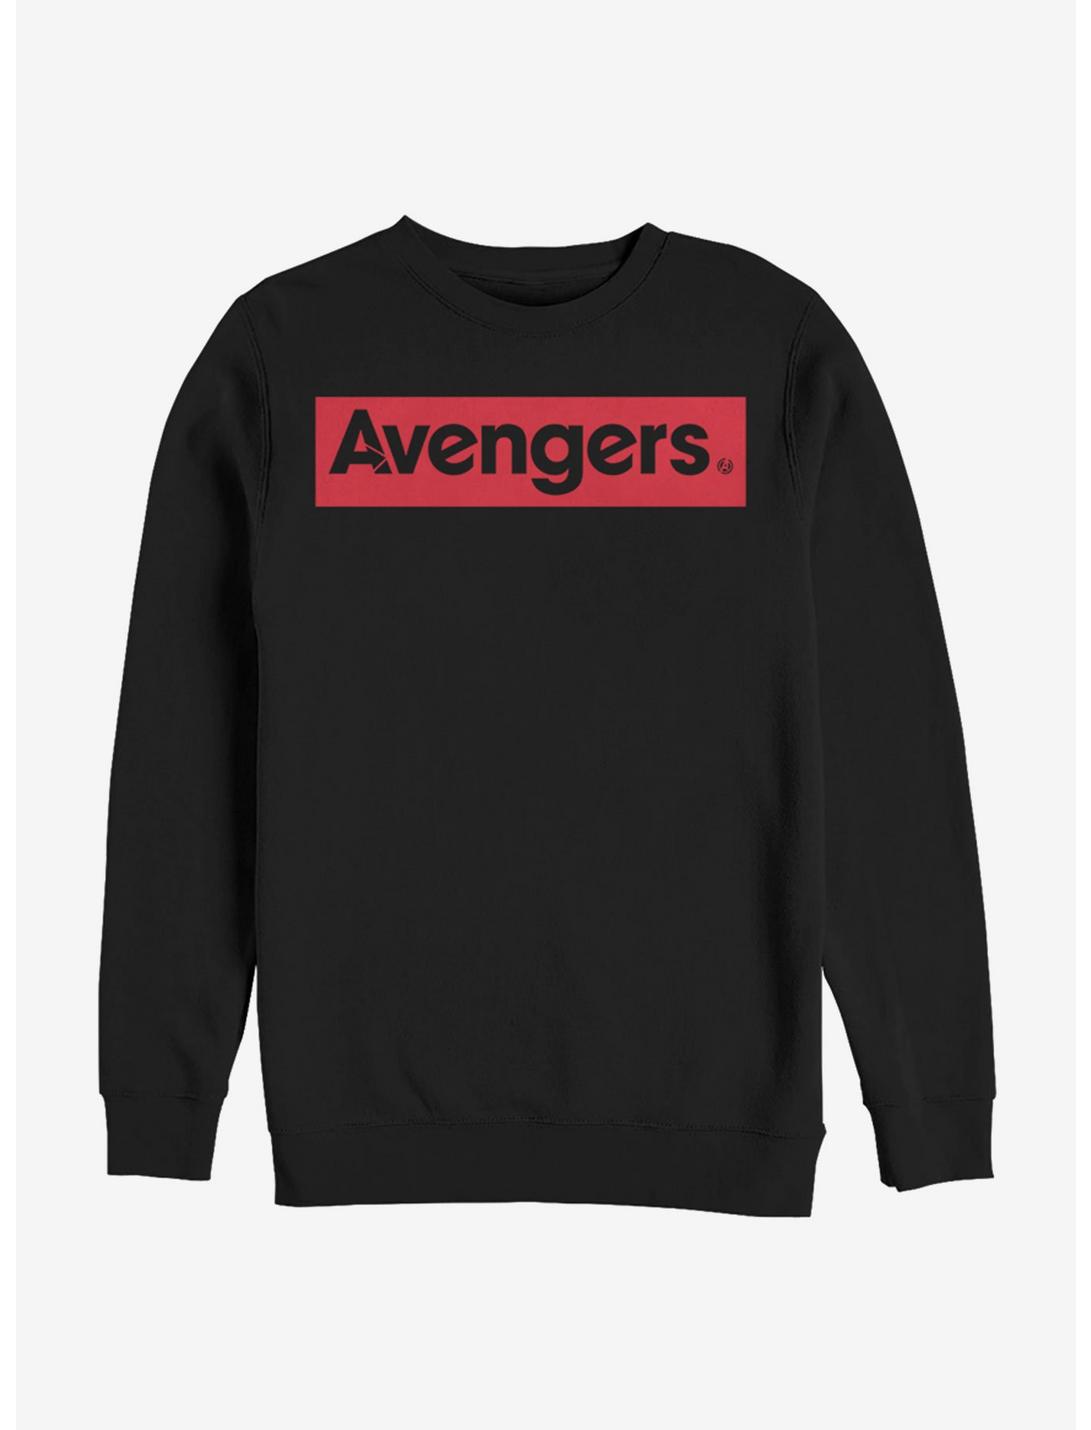 Marvel Avengers Endgame Avengers Sweatshirt, BLACK, hi-res